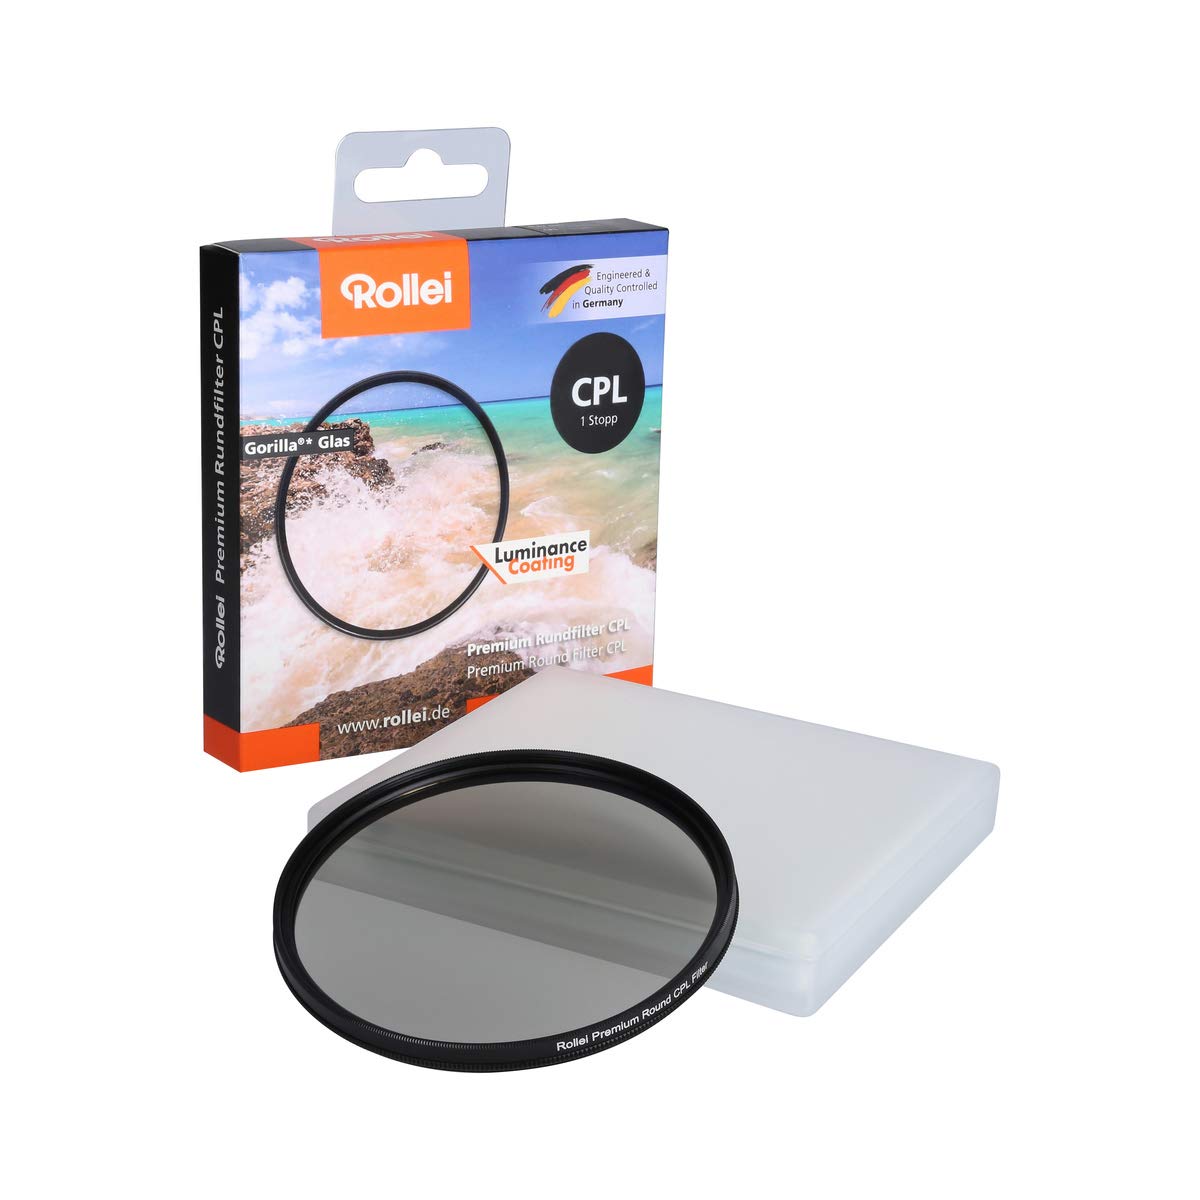 Rollei Premium Rundfilter CPL 82 mm (1 Stopp) - Polarisationsfilter (Polfilter) mit Aluminium-Ring aus Gorilla Glas mit spezieller Beschichtung - Größe: 82 mm